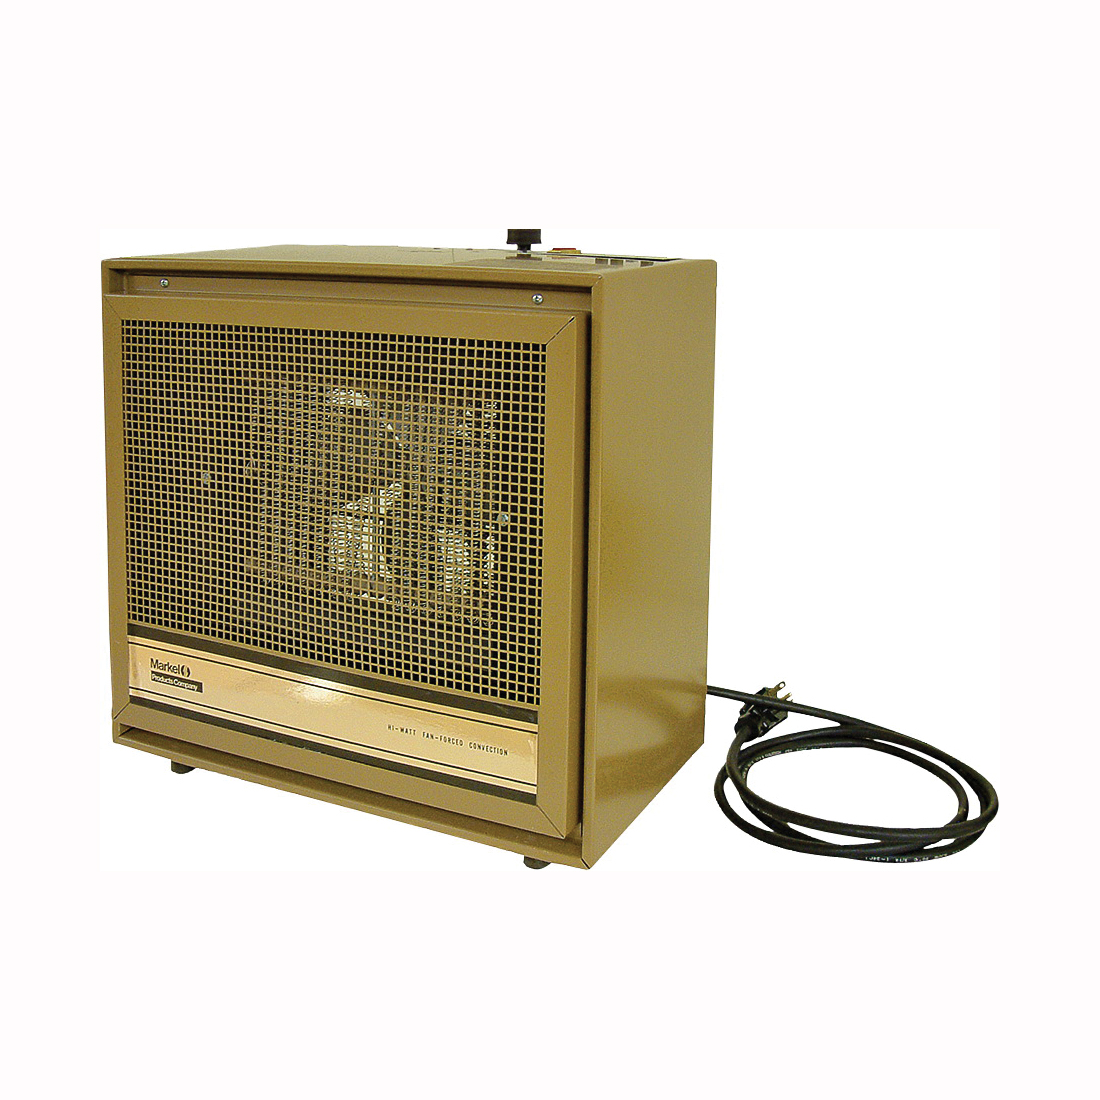 474 Series H474TMC Dual-Heat Portable Heater, 8.3/16.6 A, 240 V, 1920/3840 W, 13,106 Btu Heating